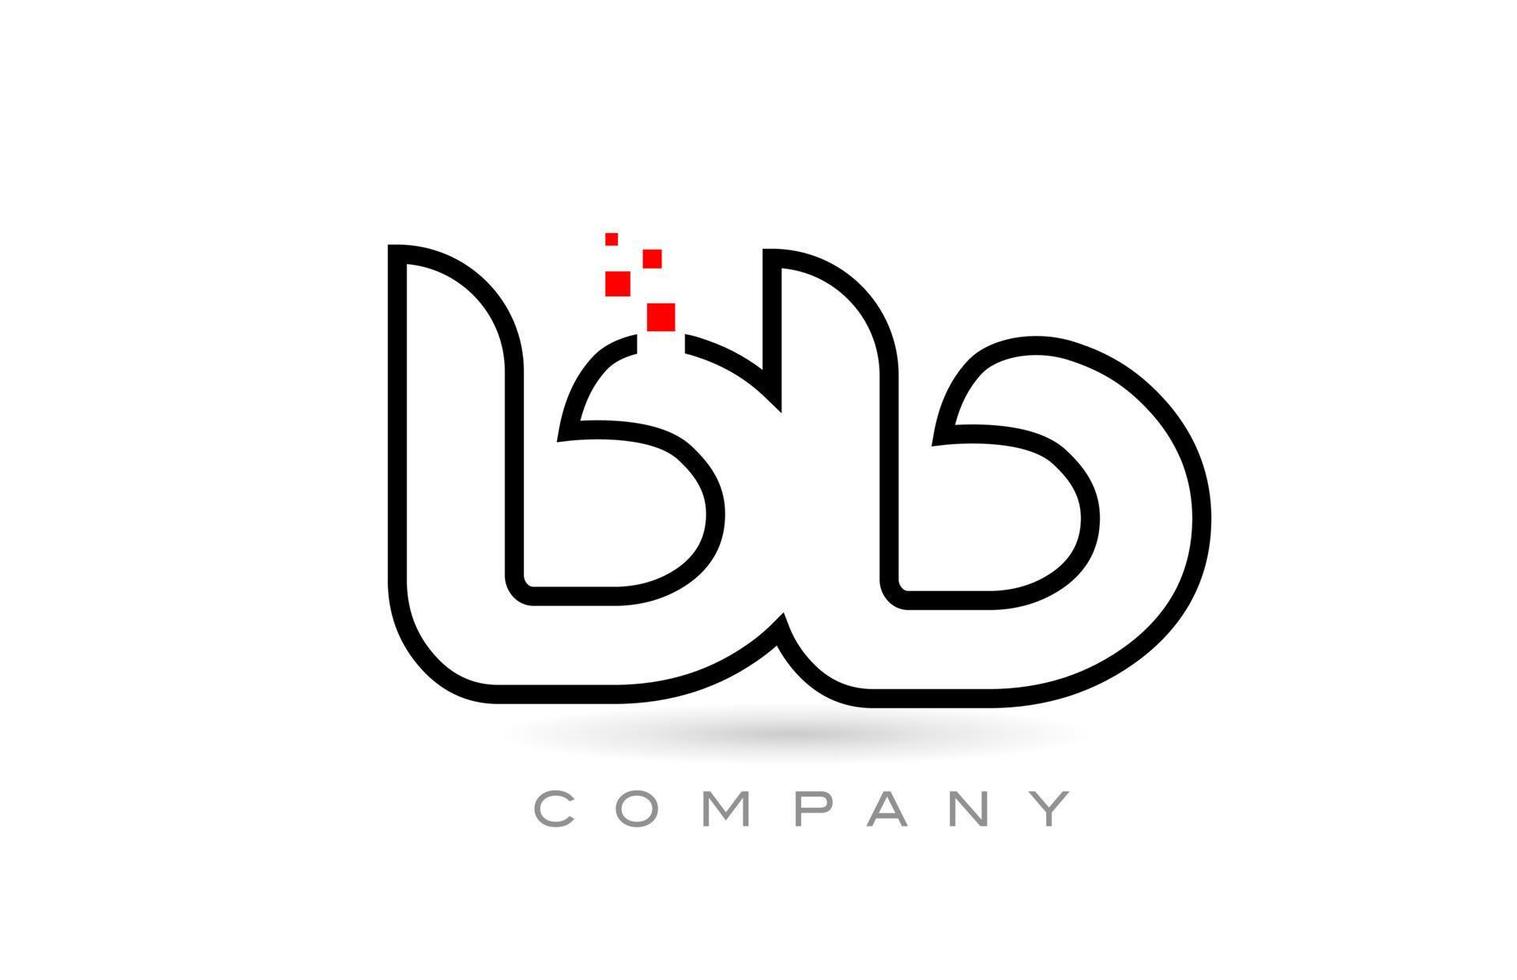 bb verbundenes alphabet buchstabe logo symbol kombinationsdesign mit punkten und roter farbe. kreative Vorlage für Unternehmen und Unternehmen vektor